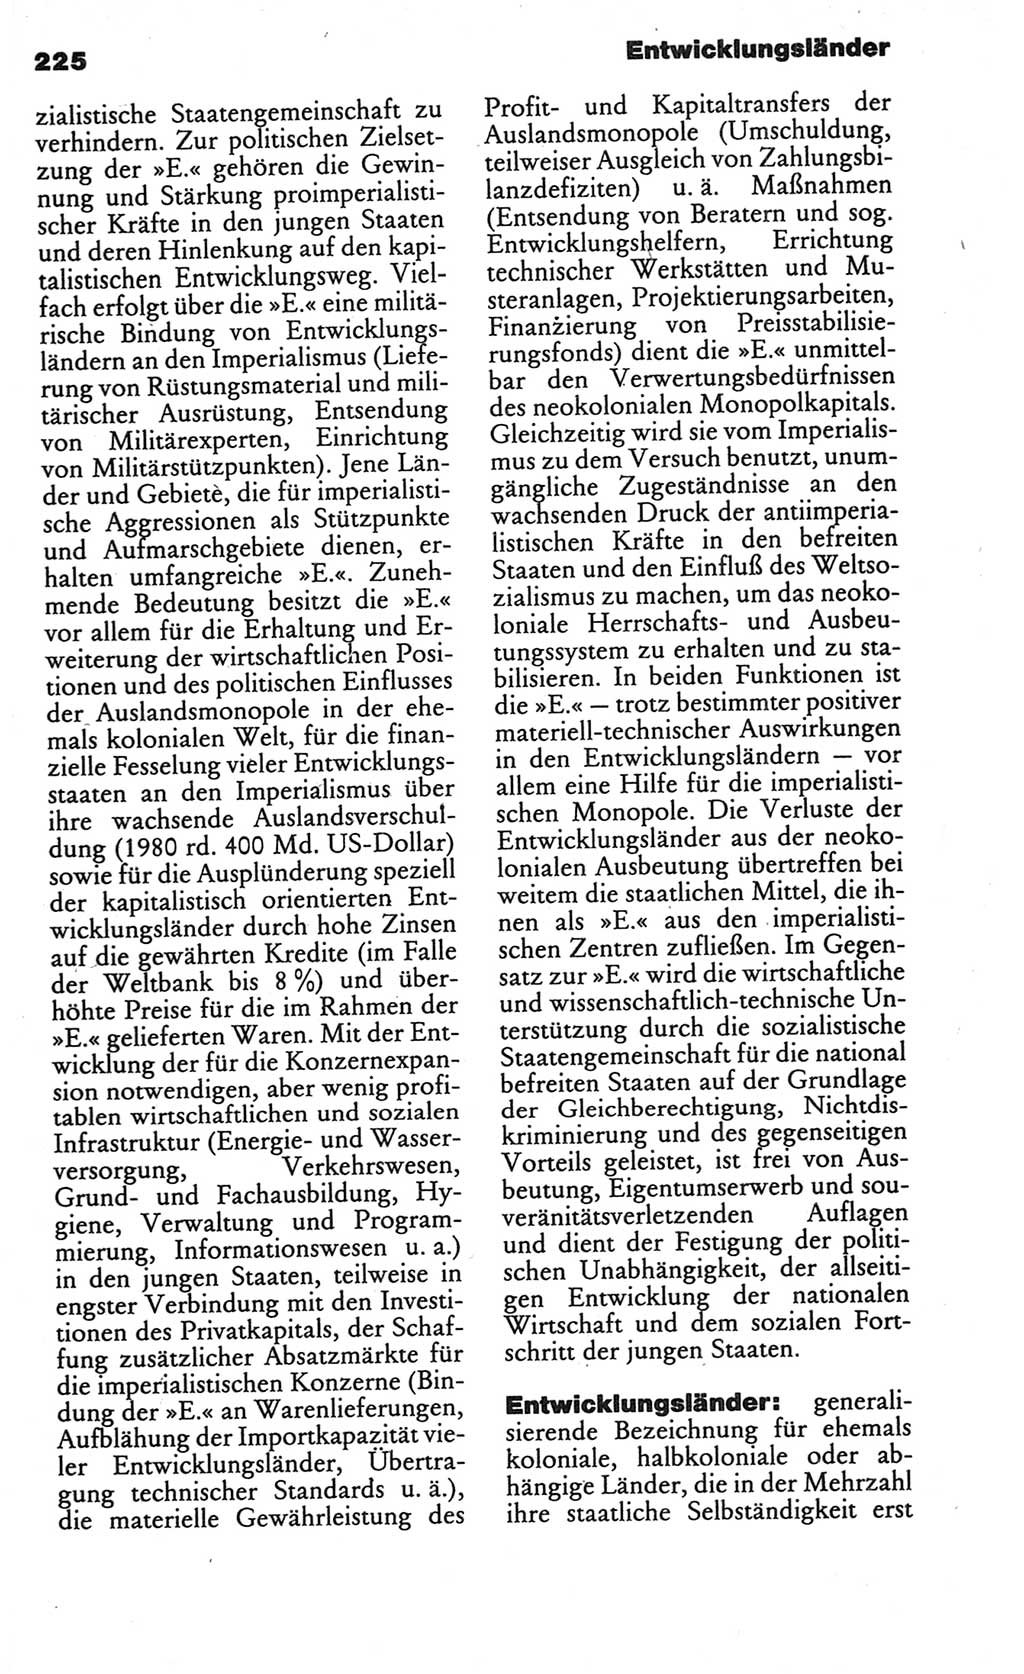 Kleines politisches Wörterbuch [Deutsche Demokratische Republik (DDR)] 1986, Seite 225 (Kl. pol. Wb. DDR 1986, S. 225)